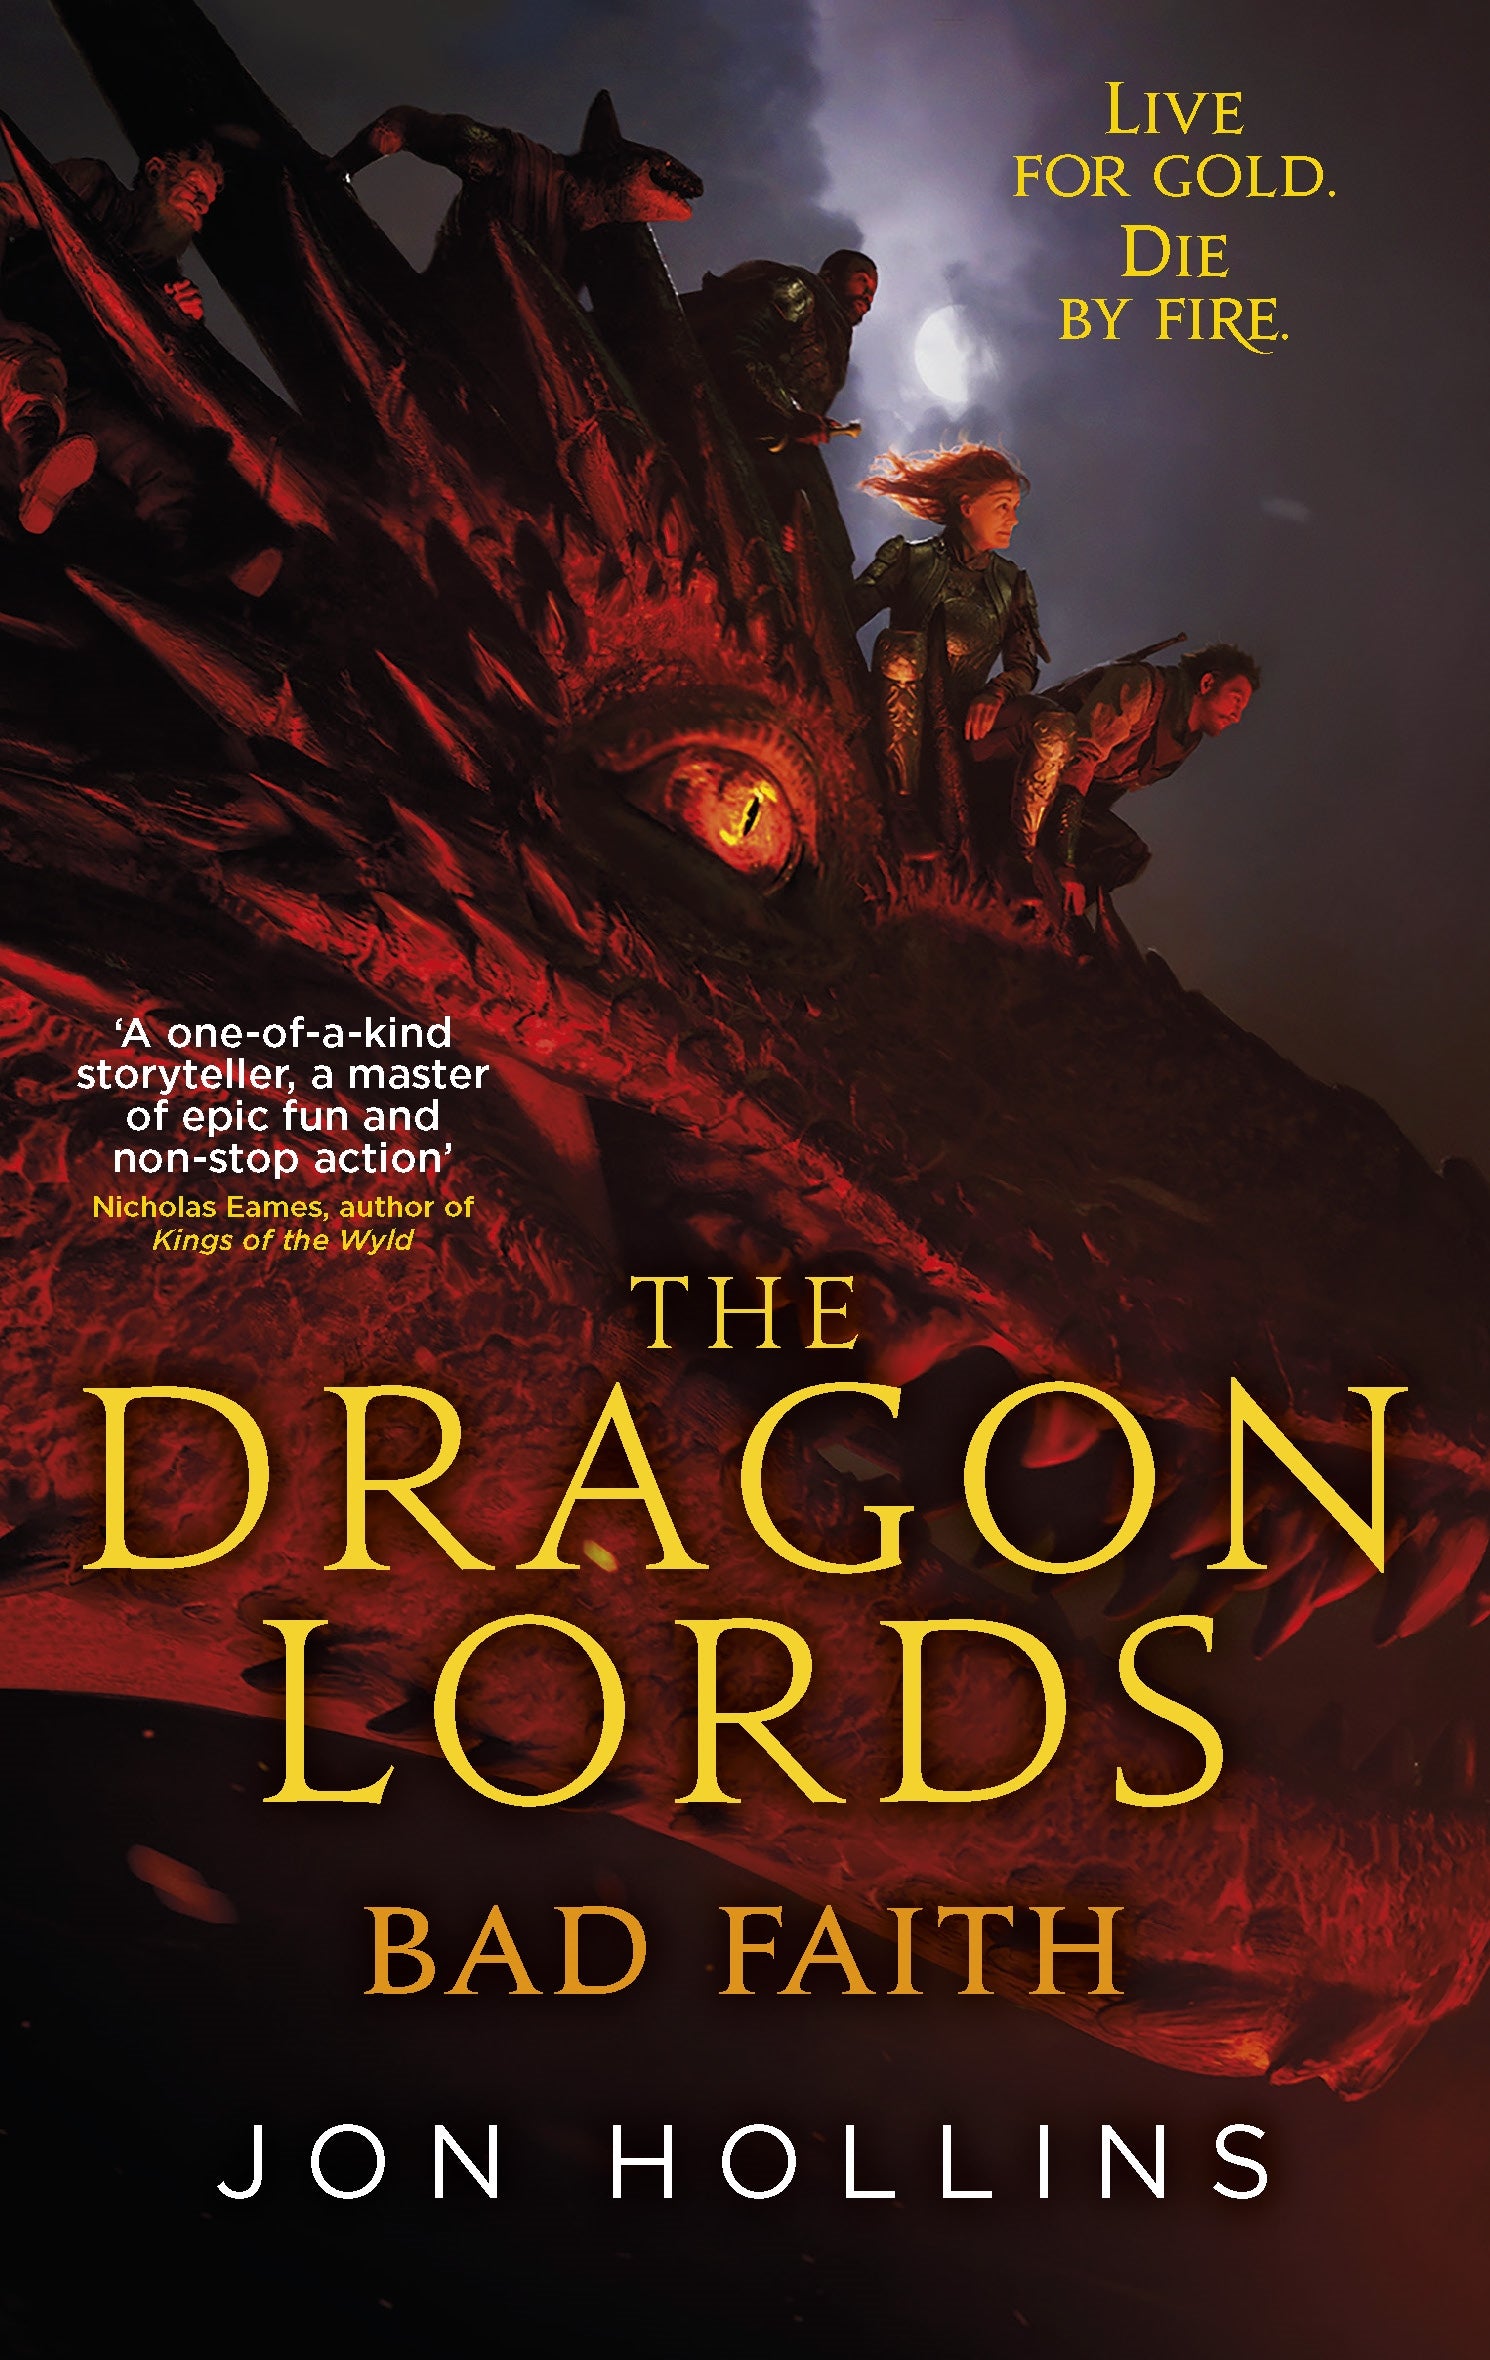 The Dragon Lords 3: Bad Faith by Jon Hollins